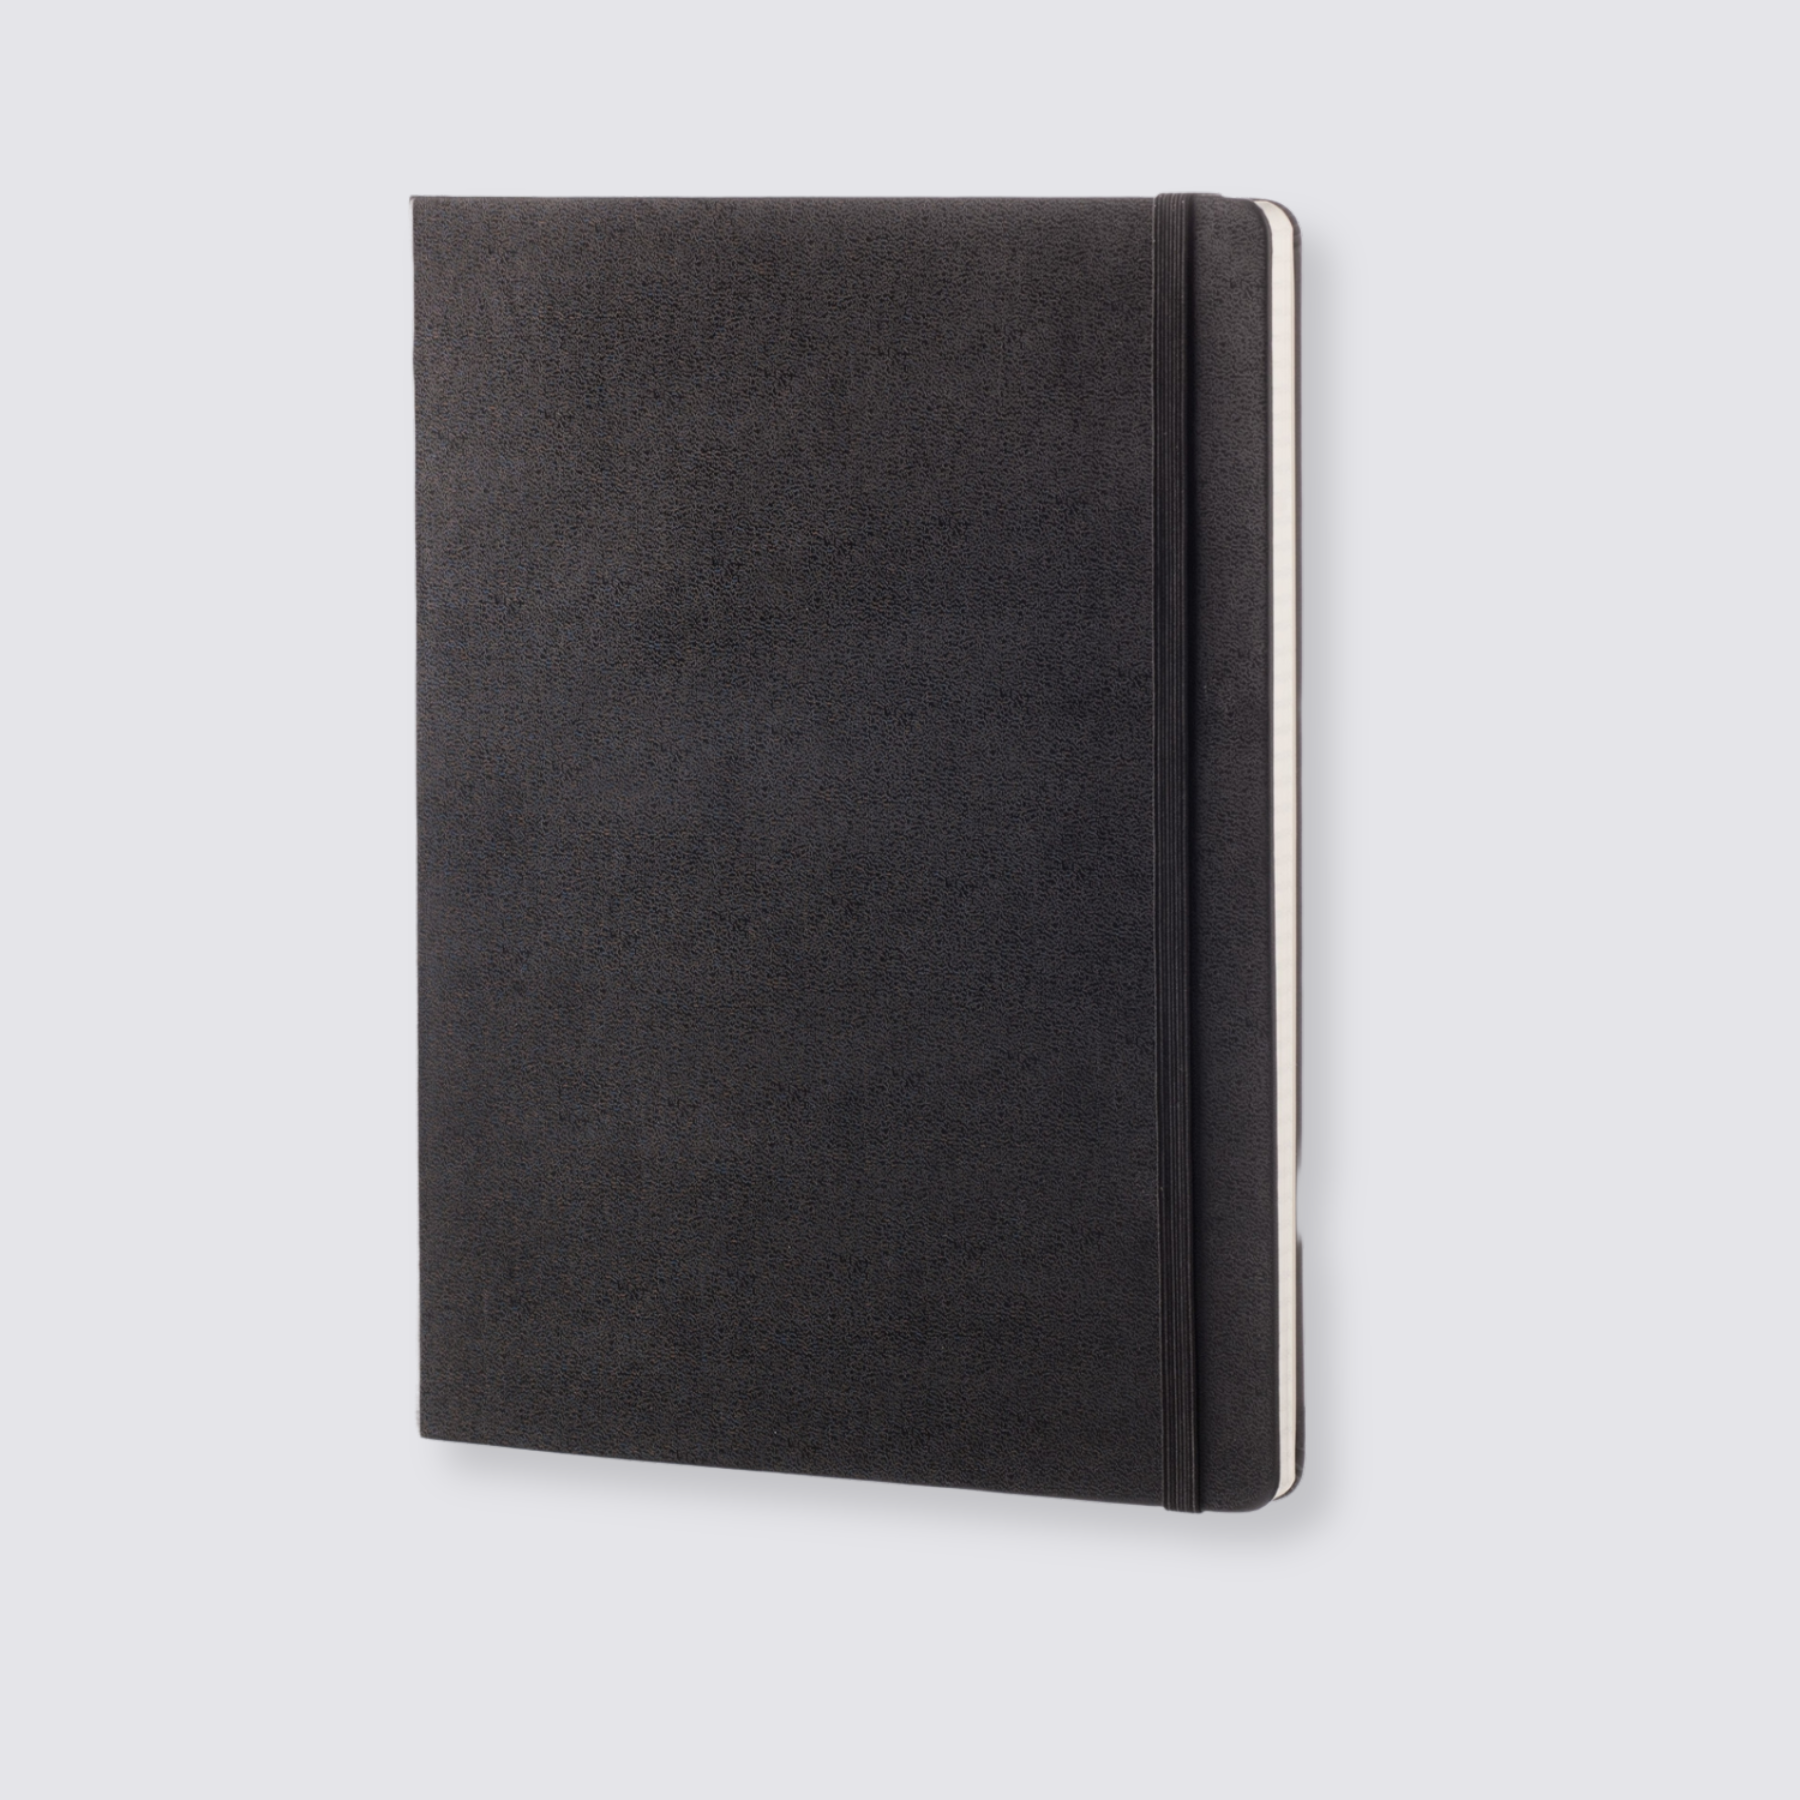 Extra large notebook black moleskine